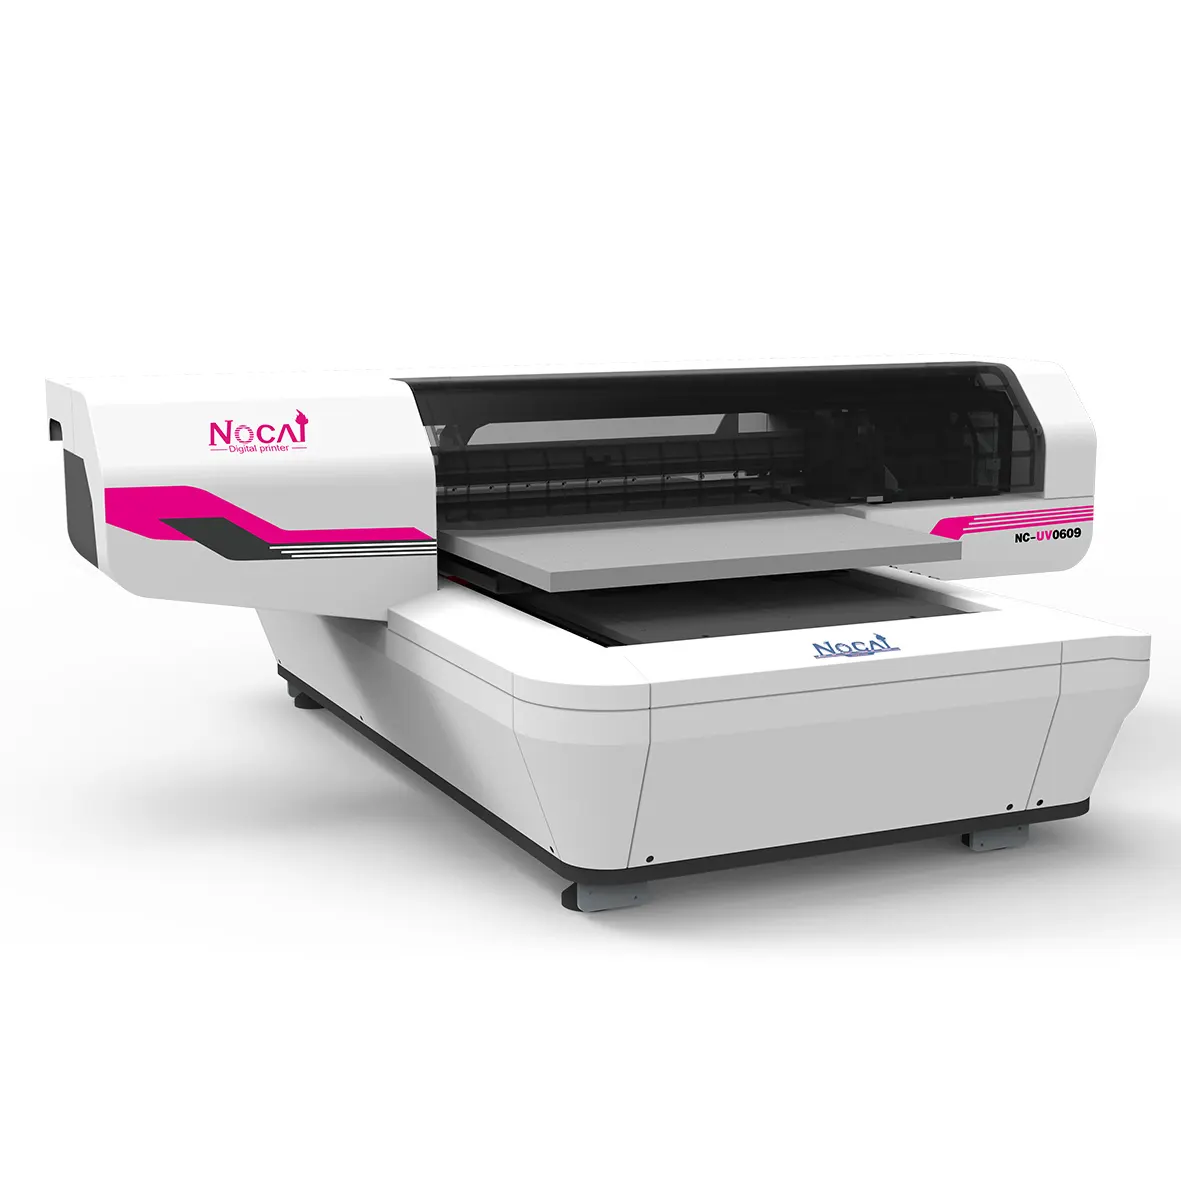 Nocai-impresora uv plana de alta resolución 0609, necesita encontrar el distribuidor en todos los países, iniciar un negocio